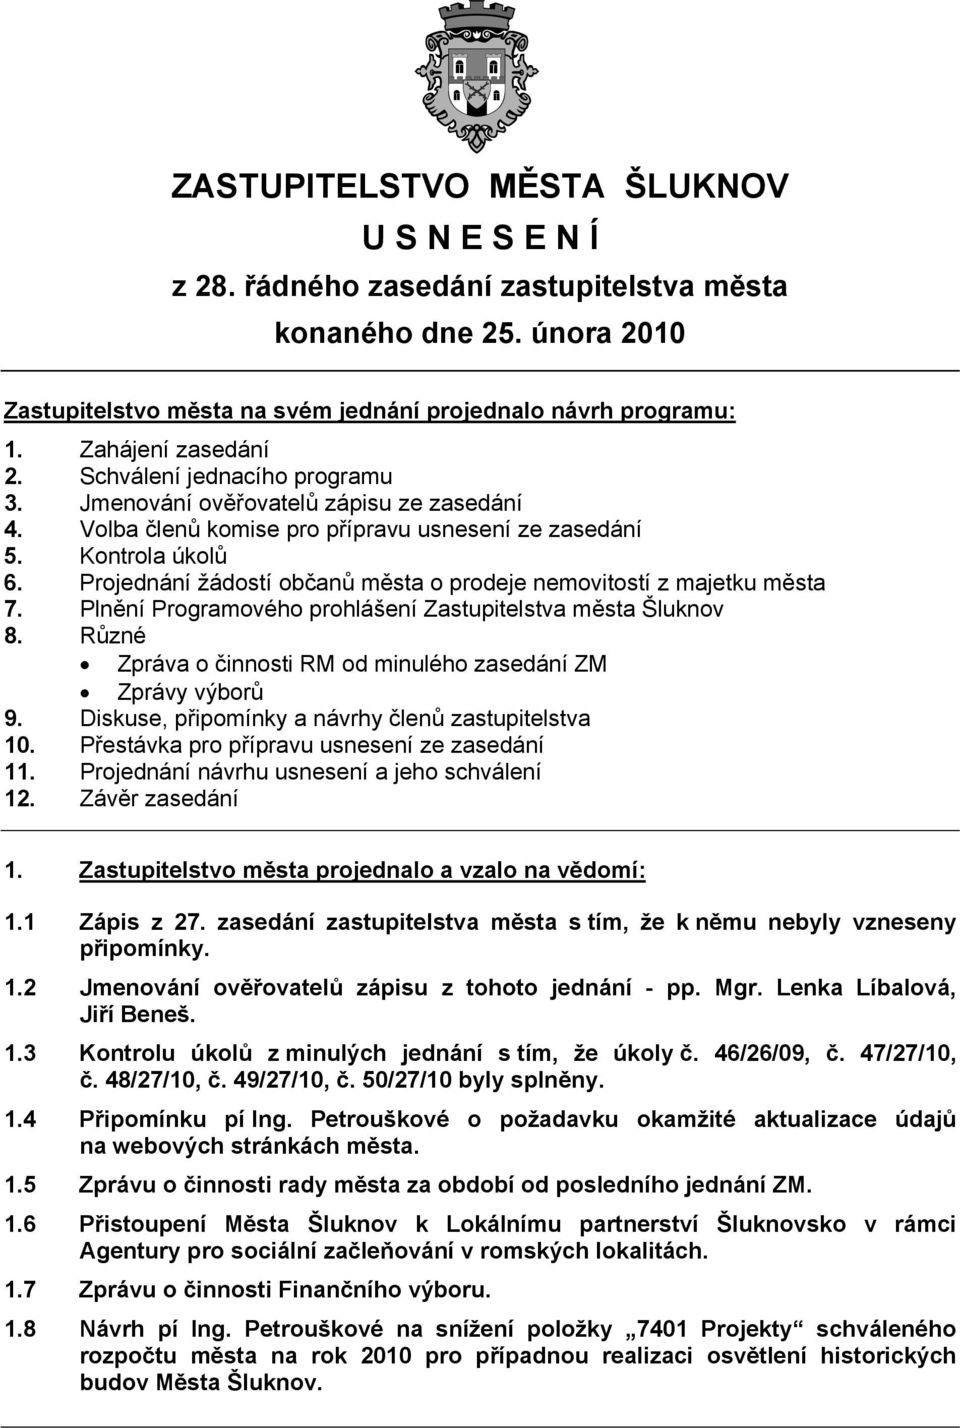 Projednání žádostí občanů města o prodeje nemovitostí z majetku města 7. Plnění Programového prohlášení Zastupitelstva města Šluknov 8.